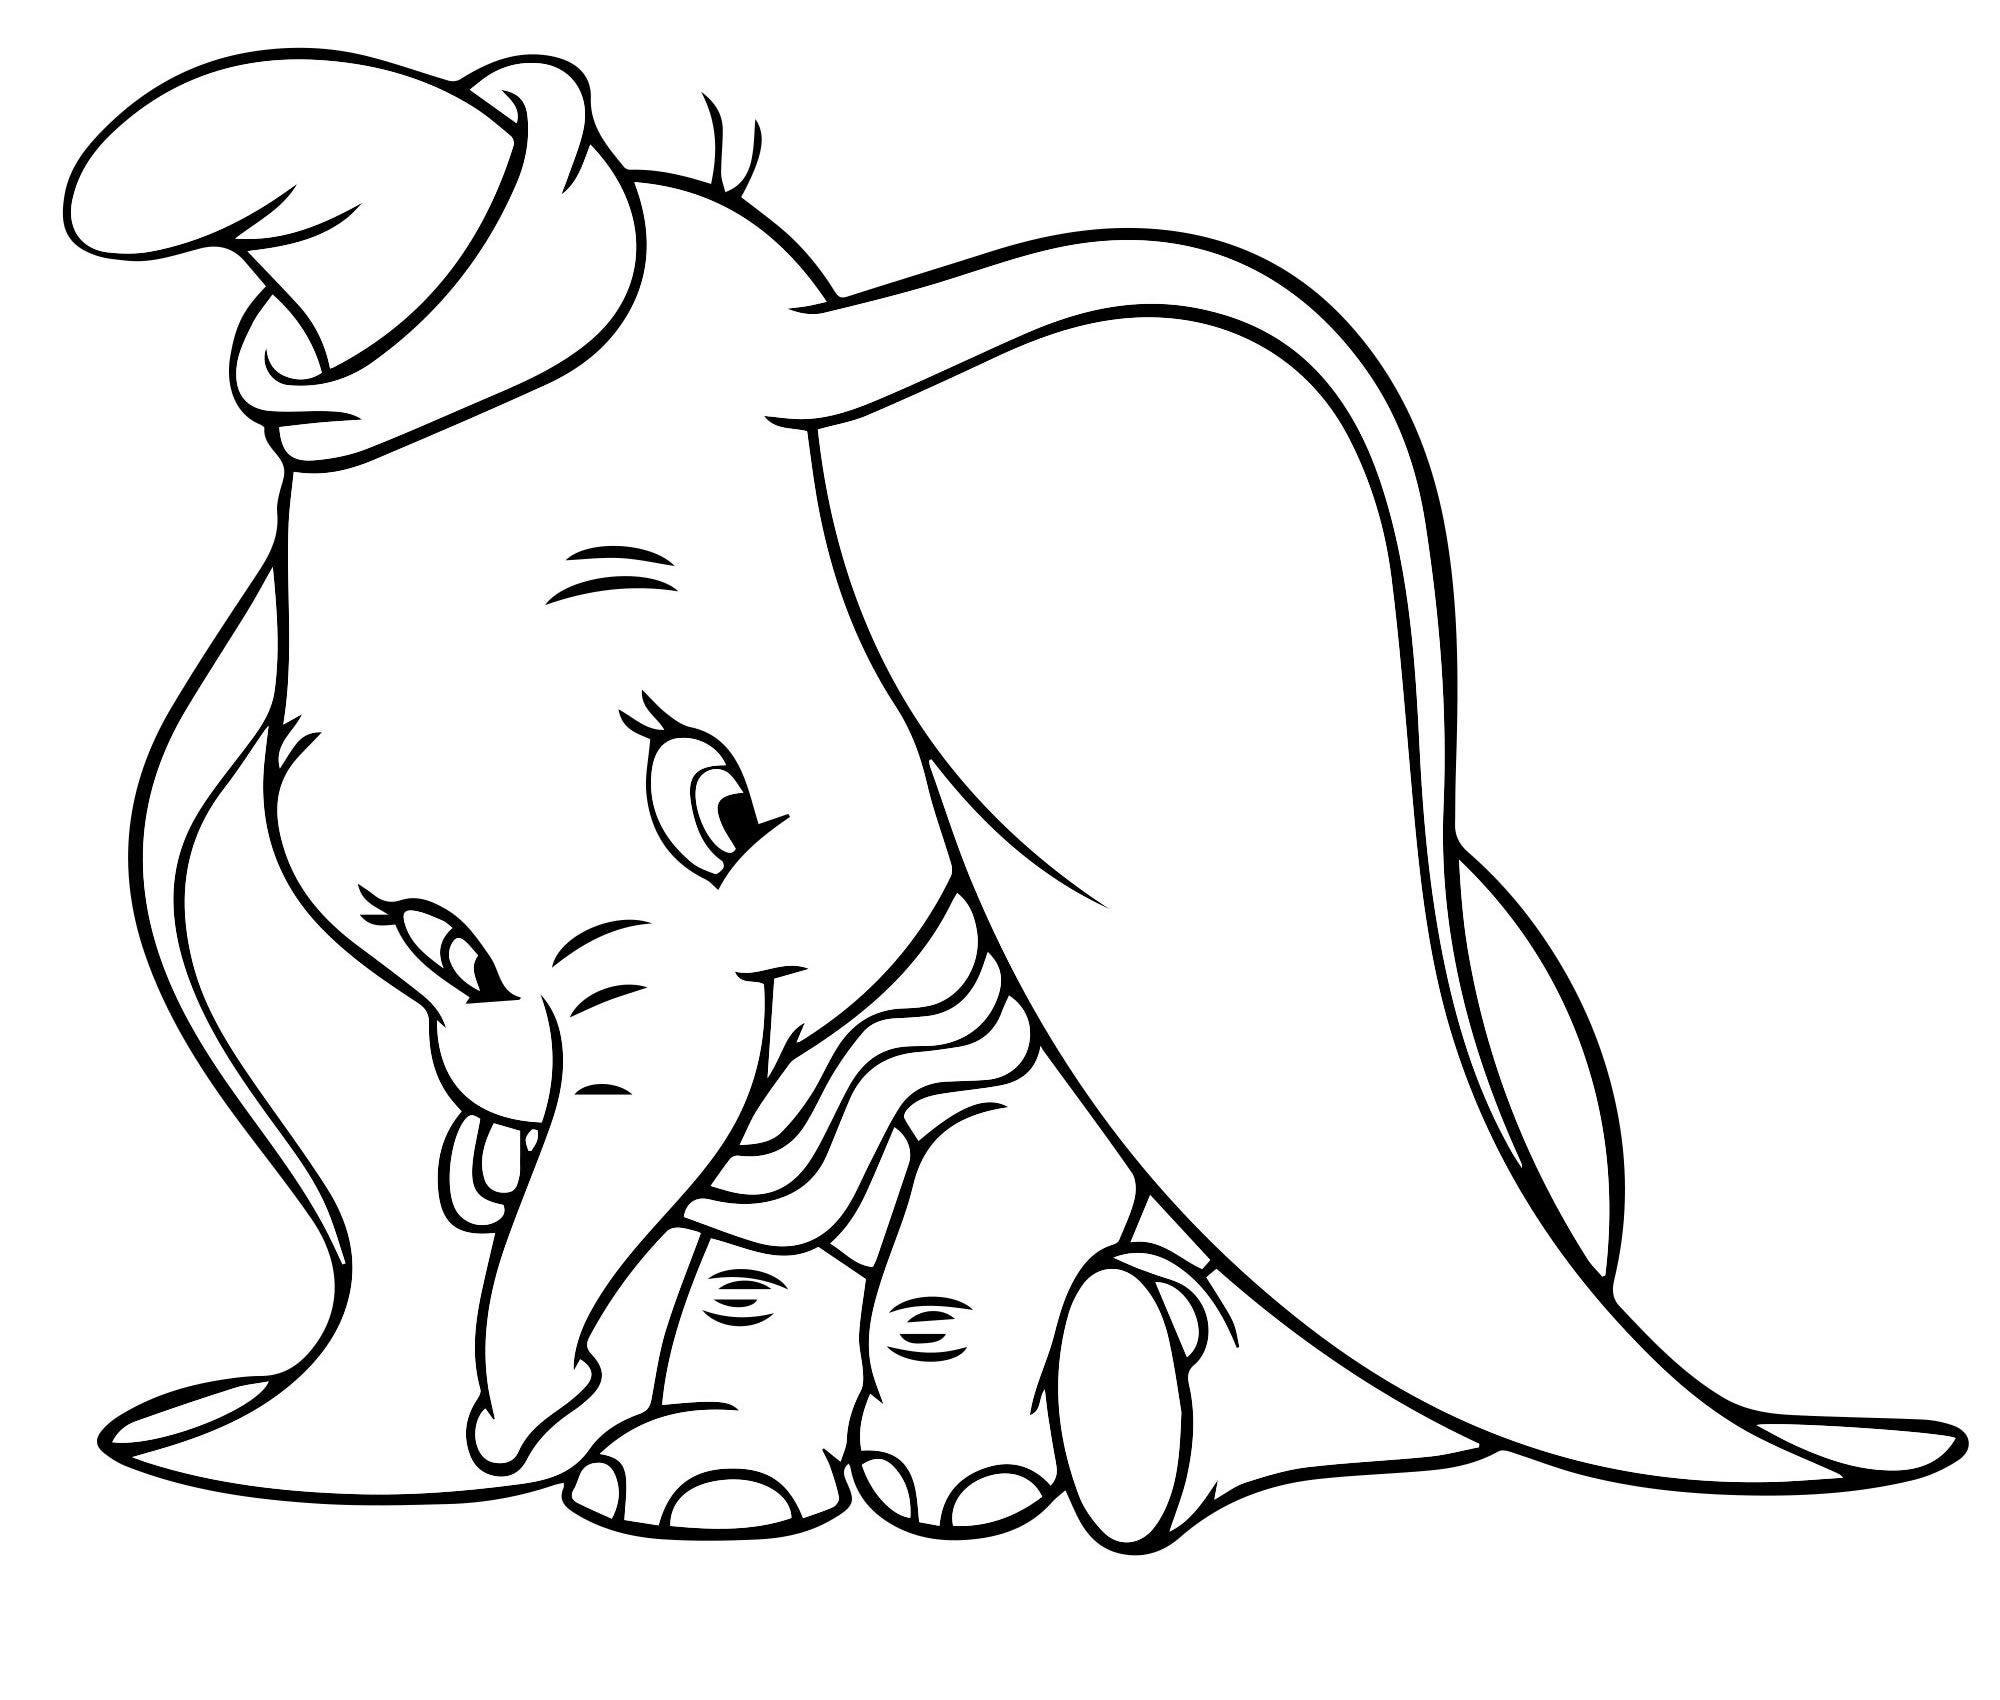 Милый слоник Дамбо раскраска для детей